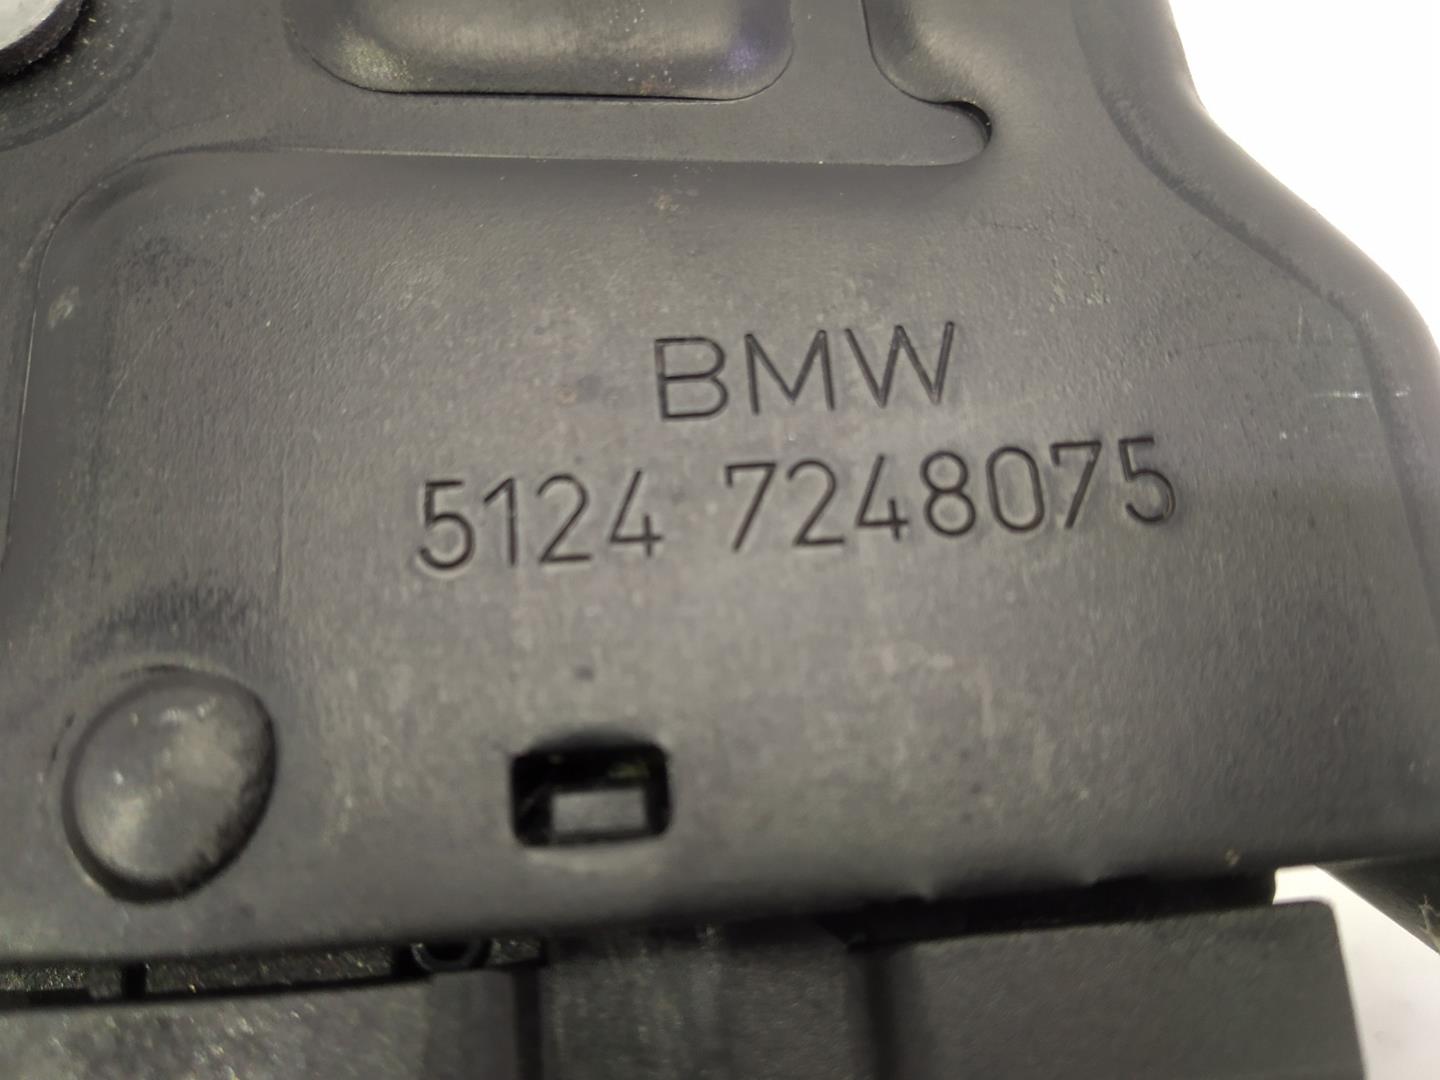 BMW 1 Series F20/F21 (2011-2020) Galinio dangčio spyna 51247248075, 51247248075, 51247248075 24514885